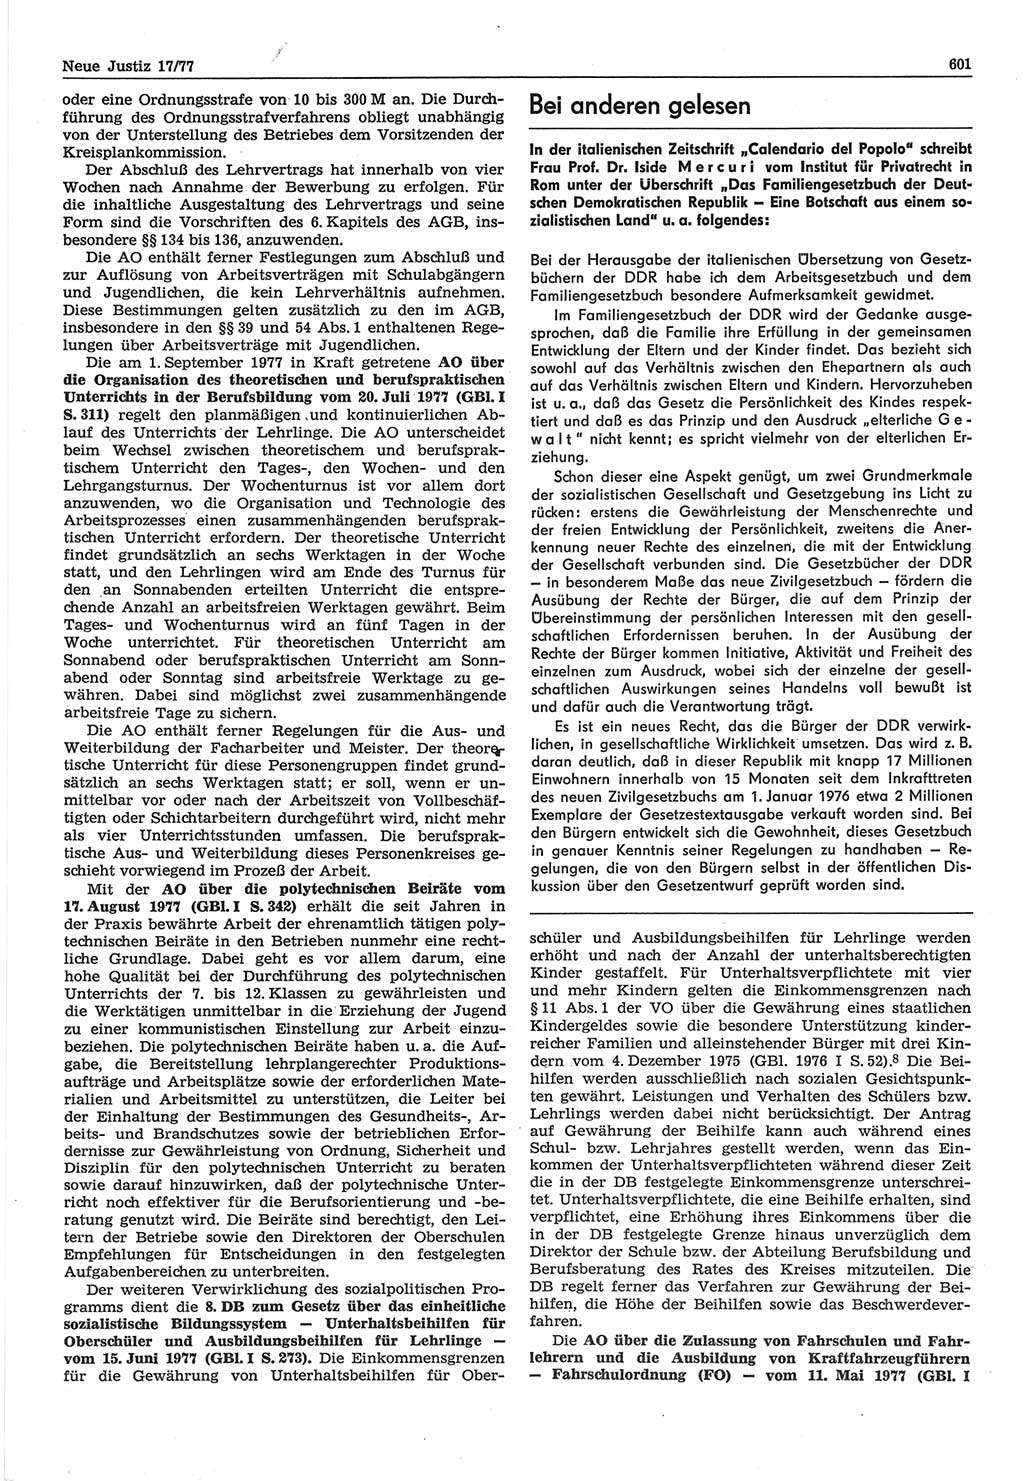 Neue Justiz (NJ), Zeitschrift für Recht und Rechtswissenschaft-Zeitschrift, sozialistisches Recht und Gesetzlichkeit, 31. Jahrgang 1977, Seite 601 (NJ DDR 1977, S. 601)